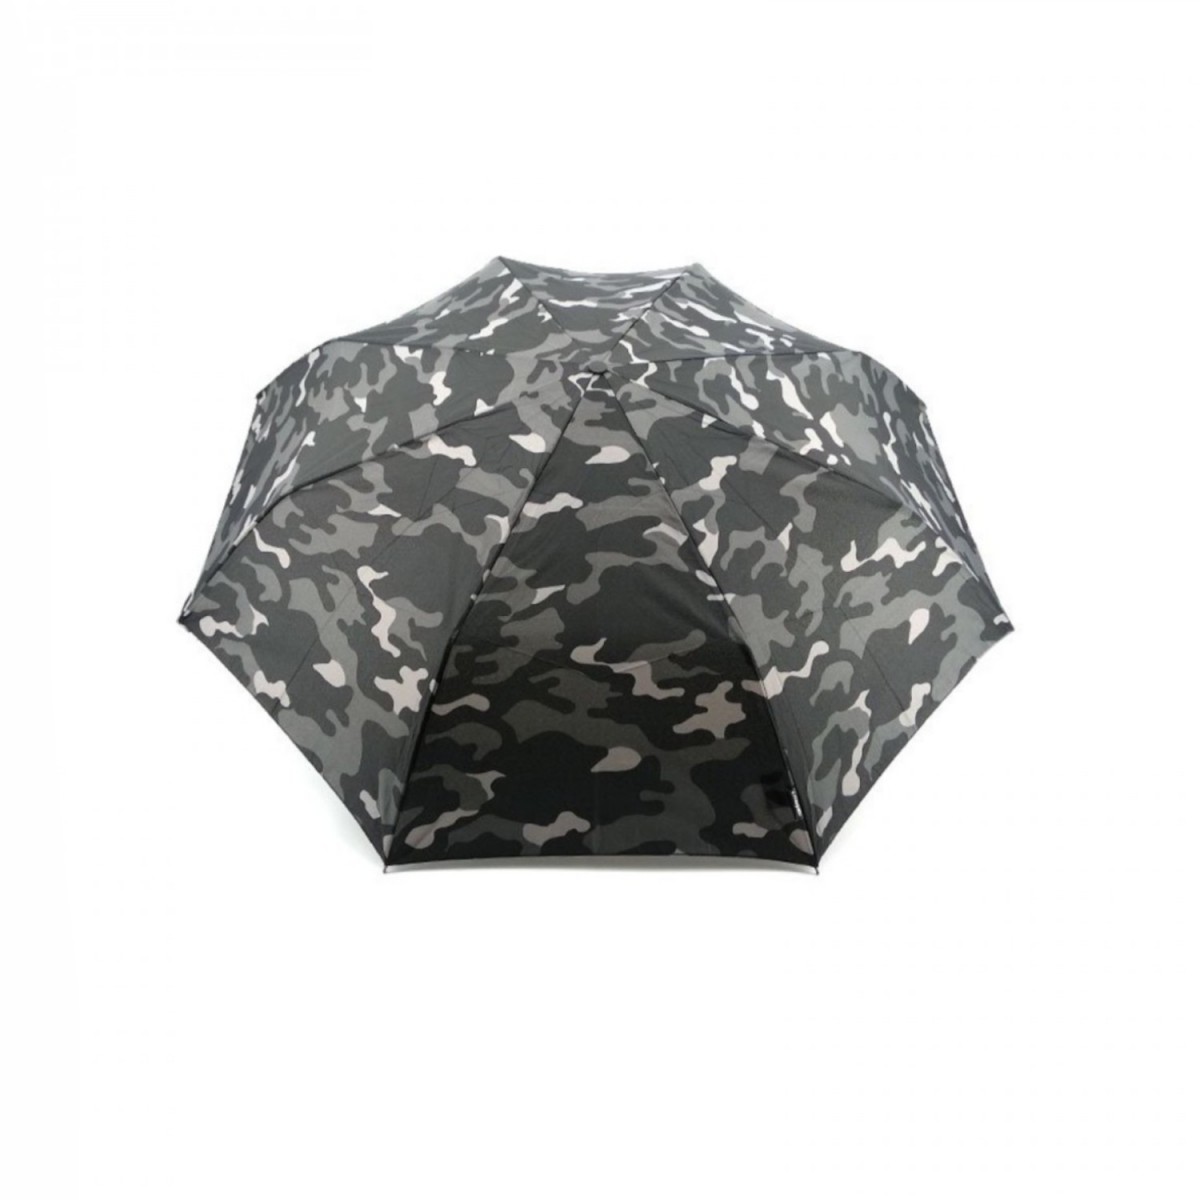 RAINBOW Plus3 ombrello manuale piccolo uomo, camouflage